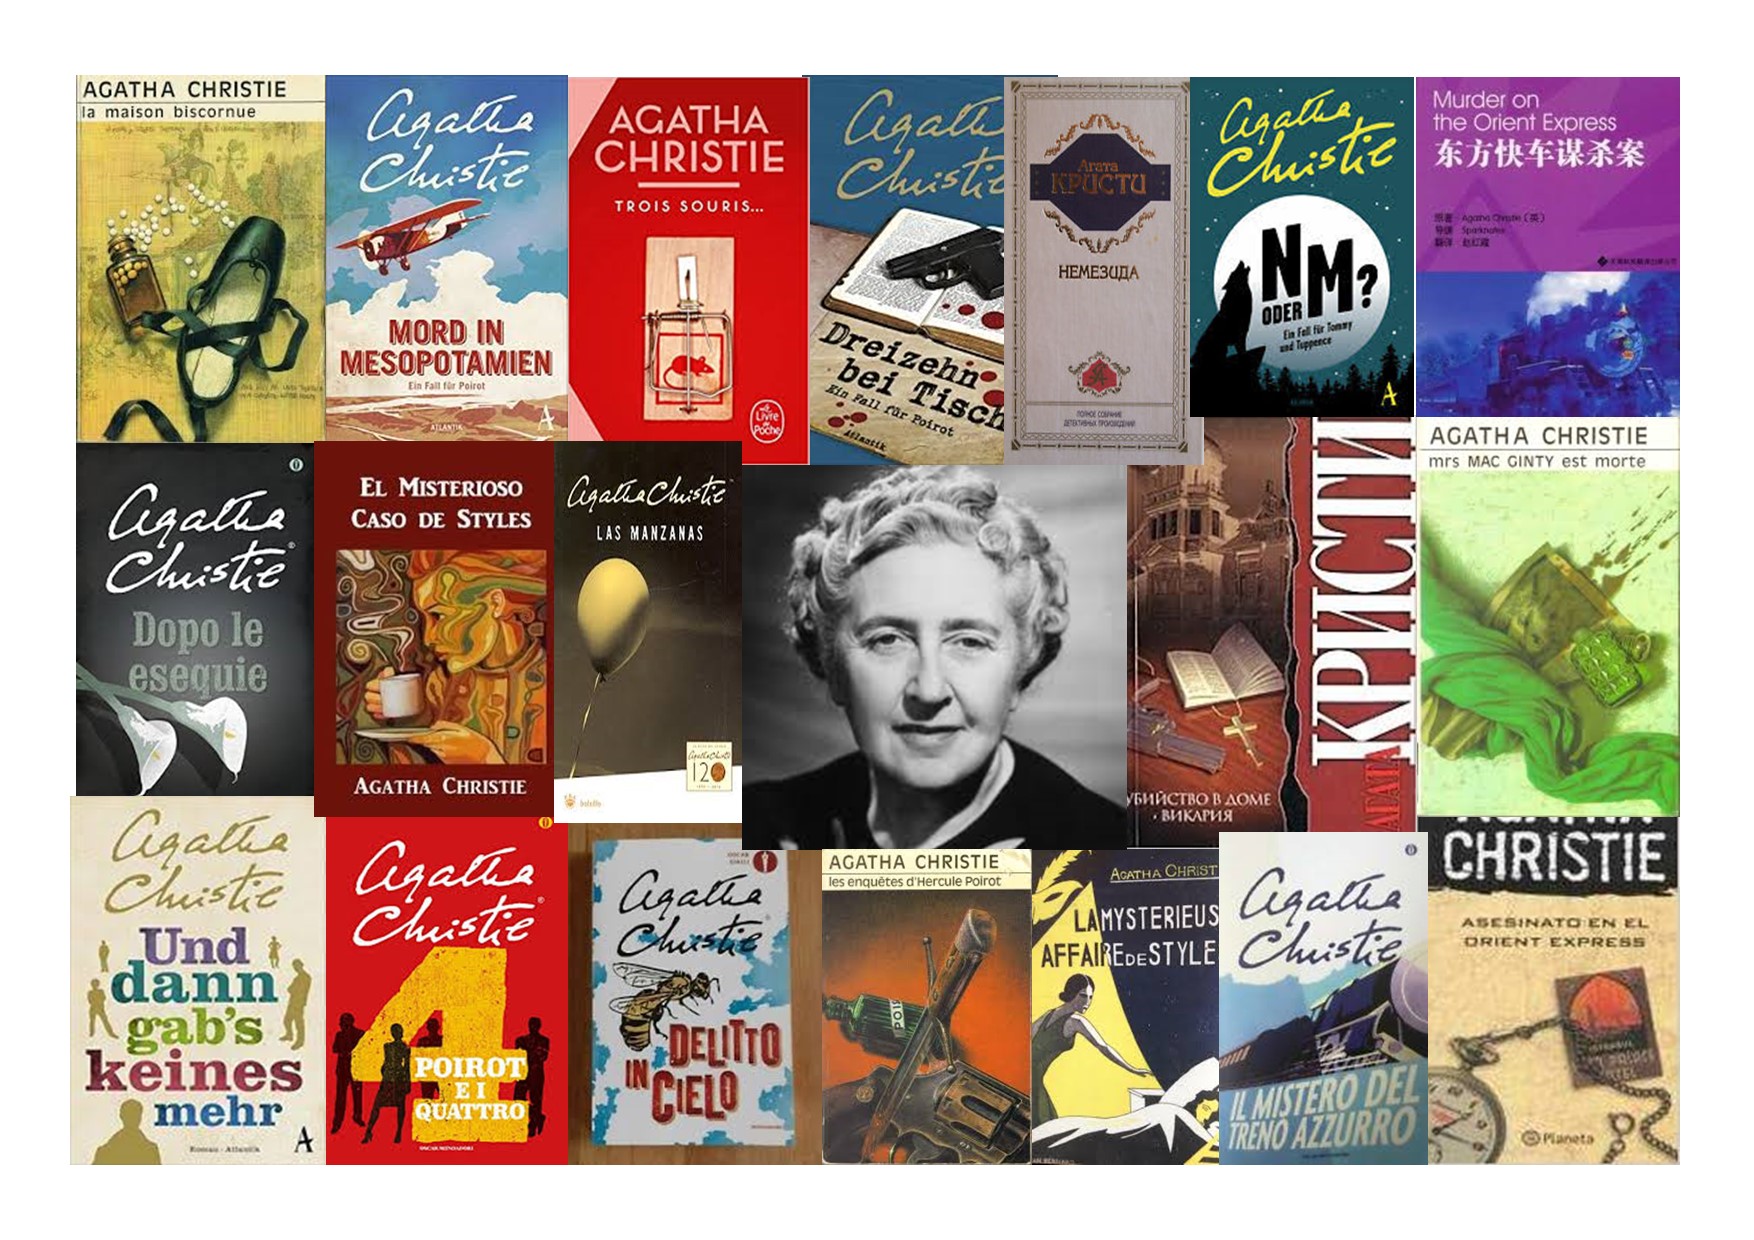 Agatha Christie 45th anniversary Cultural Calendar